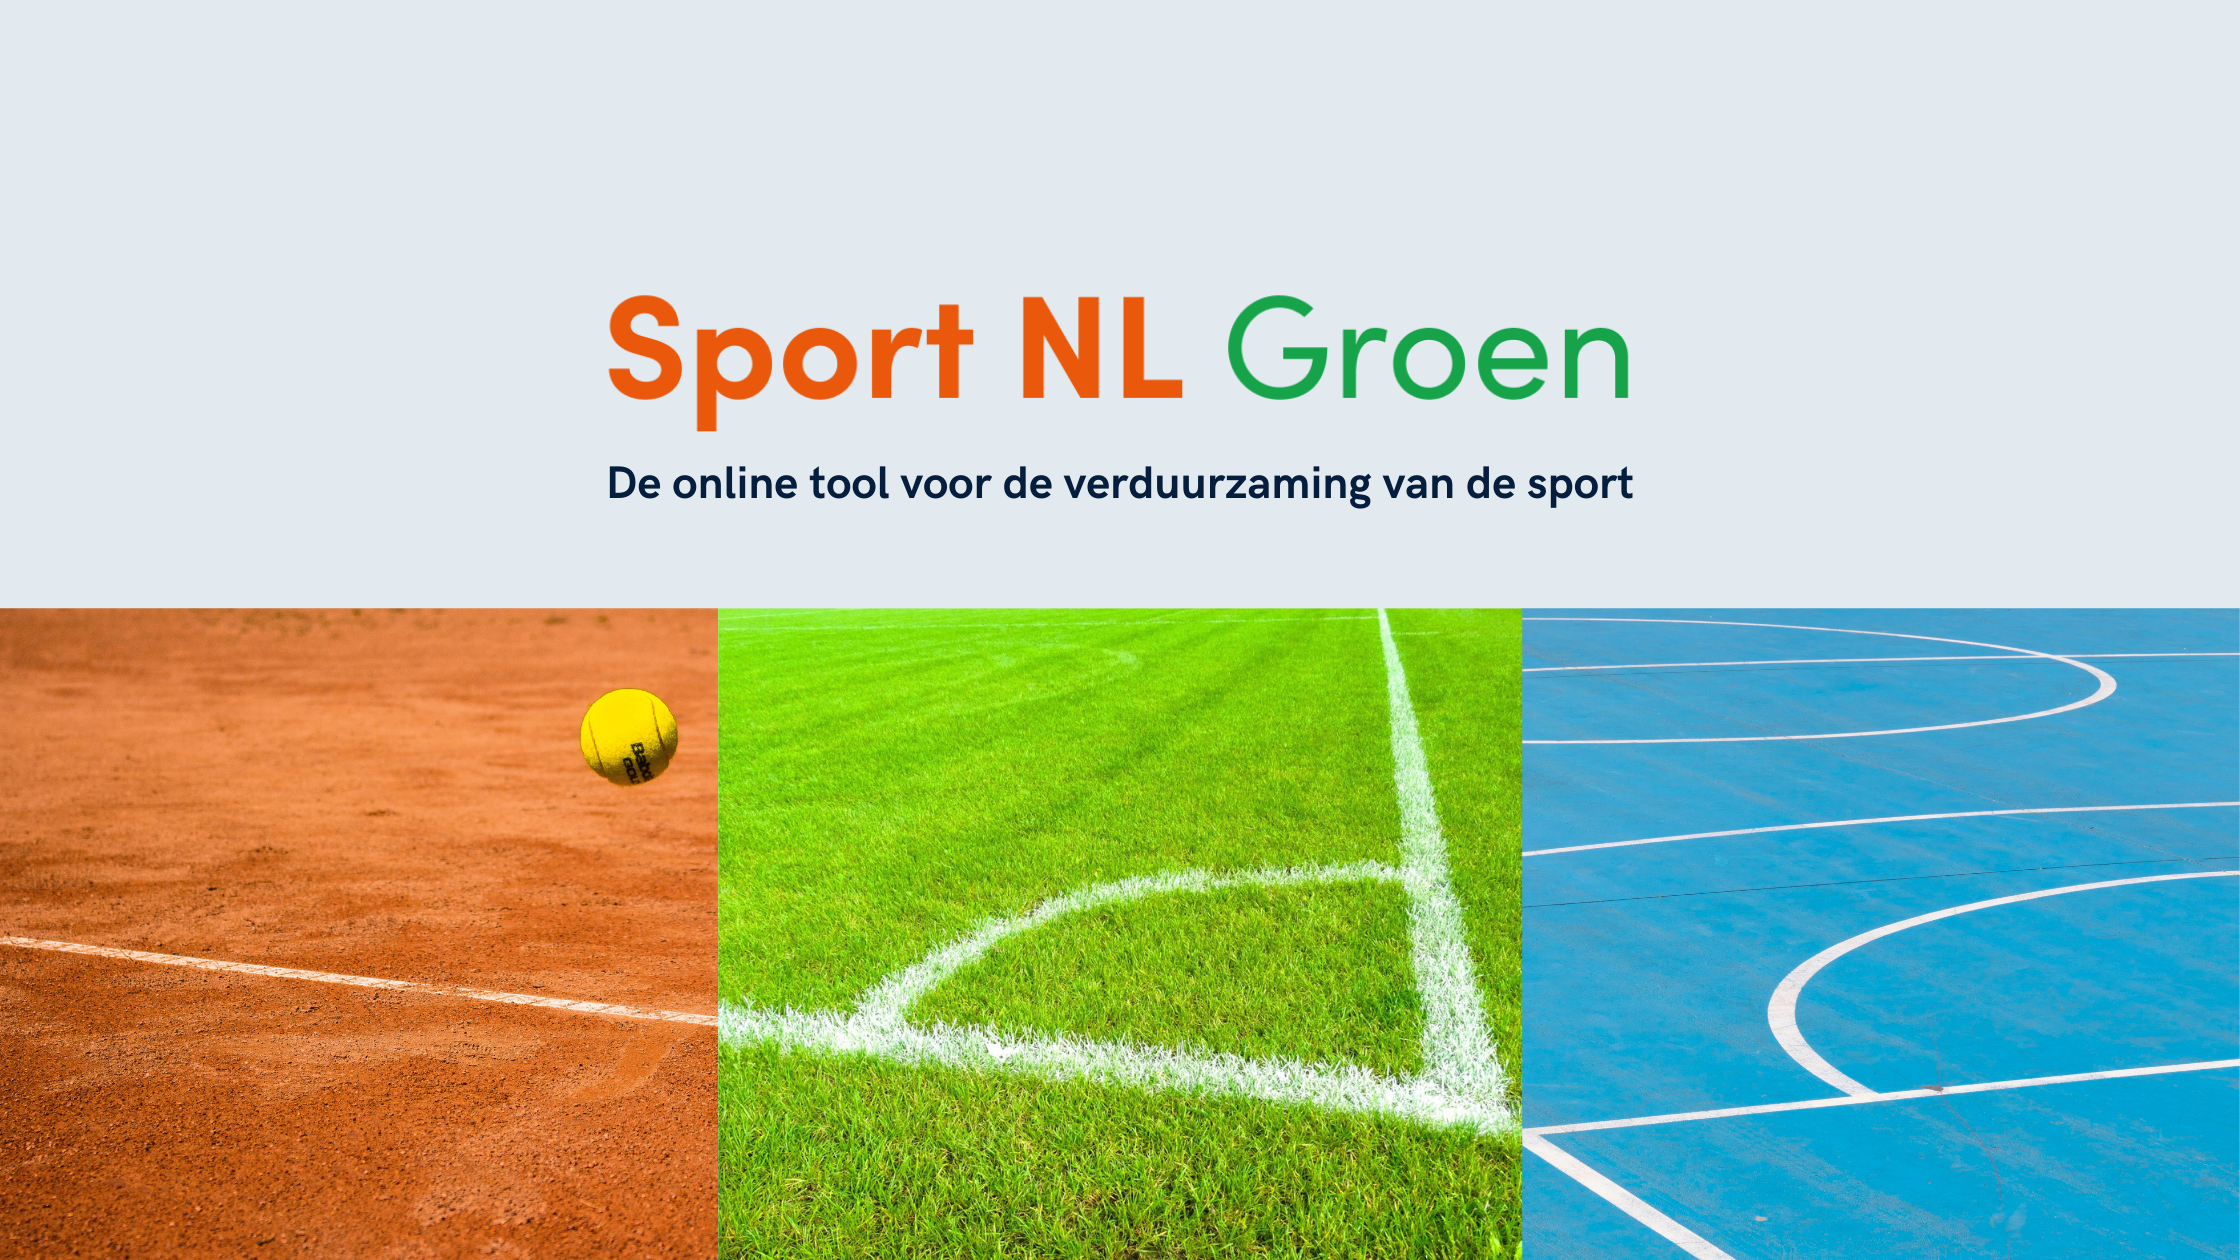 Header_Sport_NL_Groen_2240_x_1260